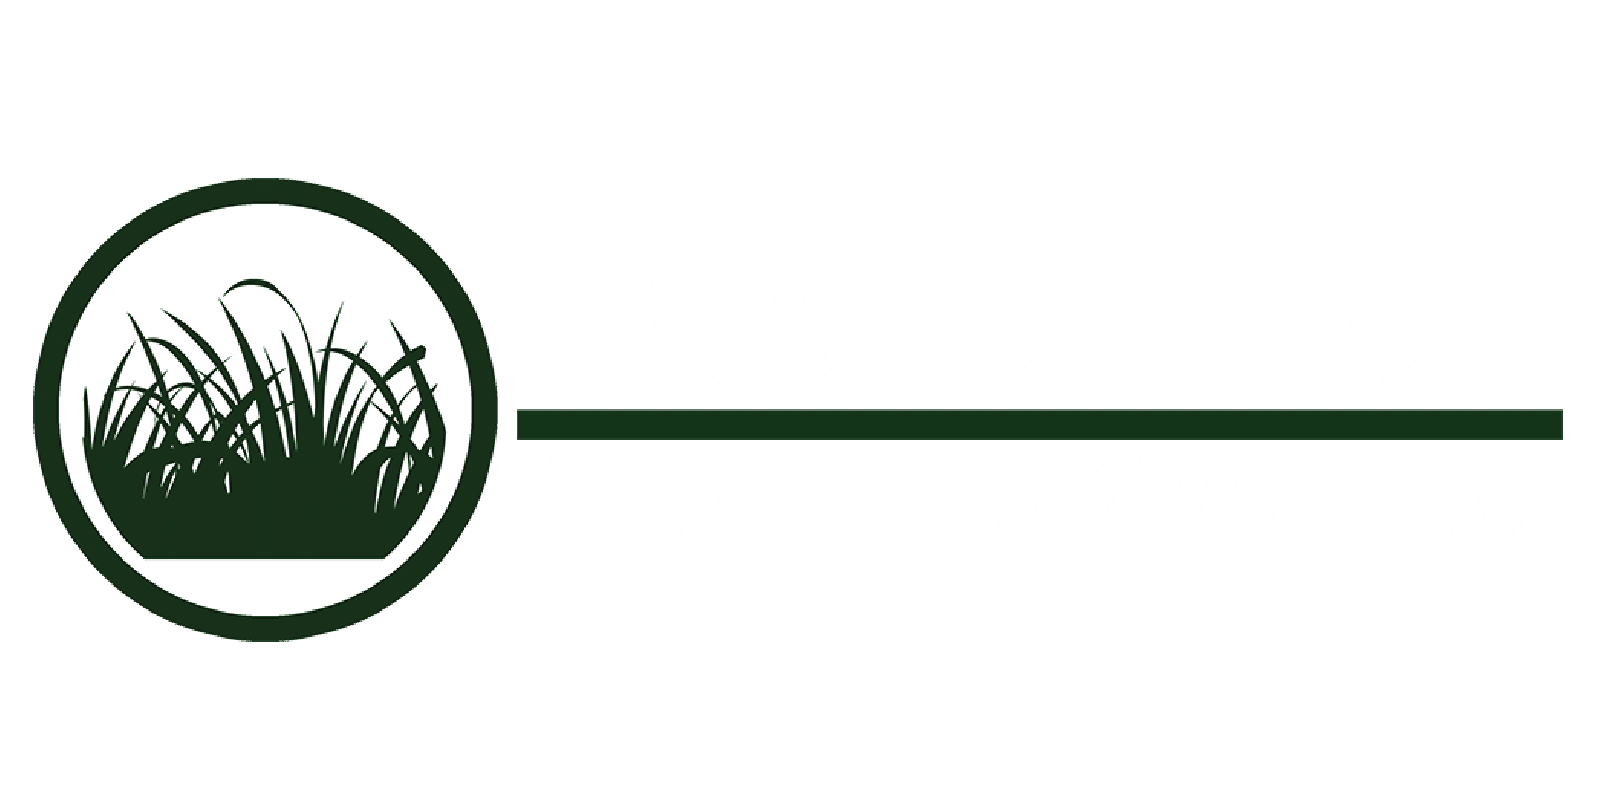 page 1 club, the gratzi, prairie ridge lawn service